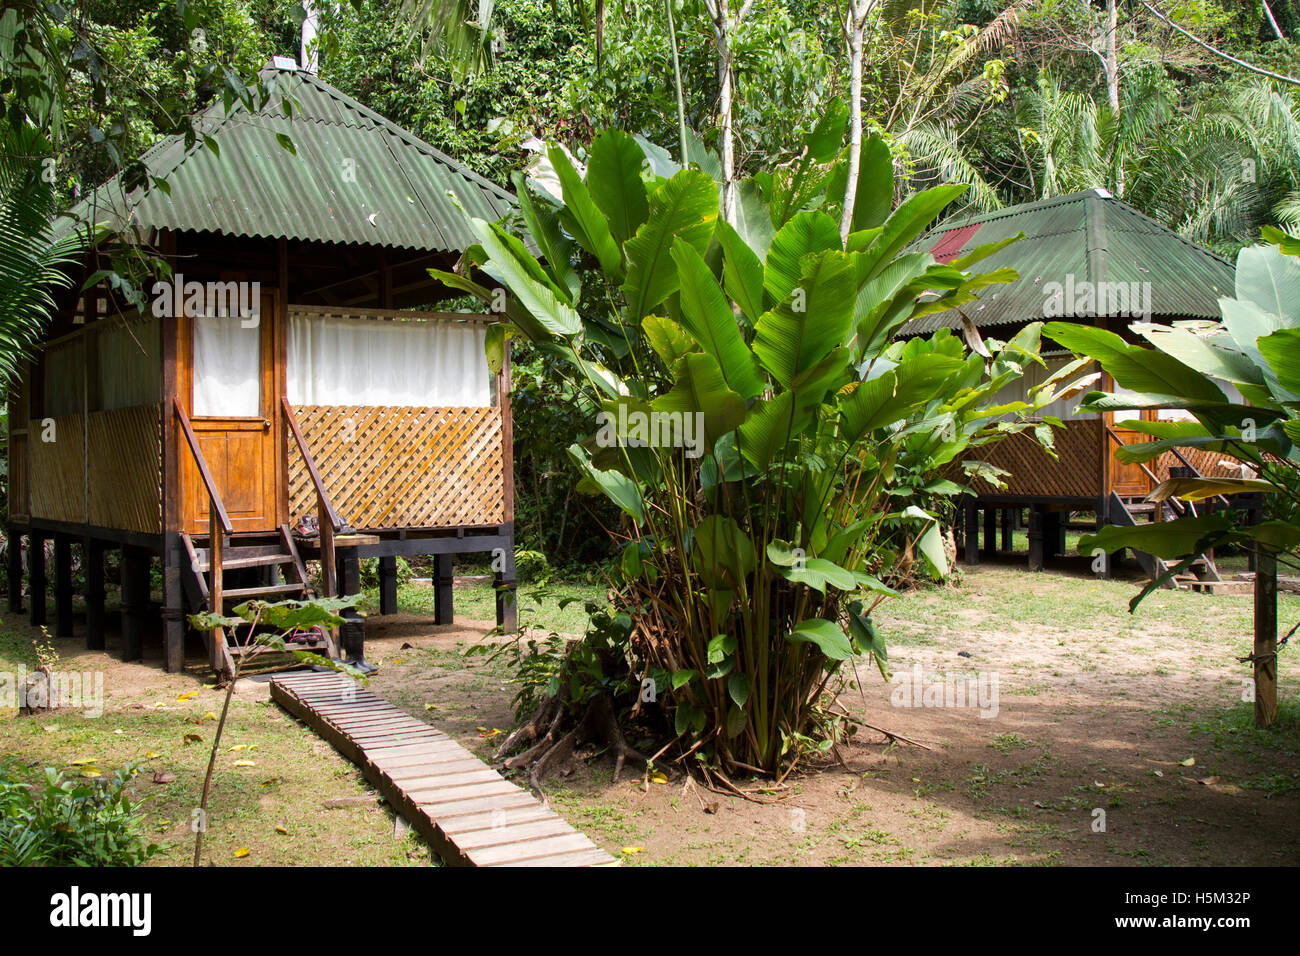 Aguaje Tented Camp in the Manu National Park, Peru Stock Photo